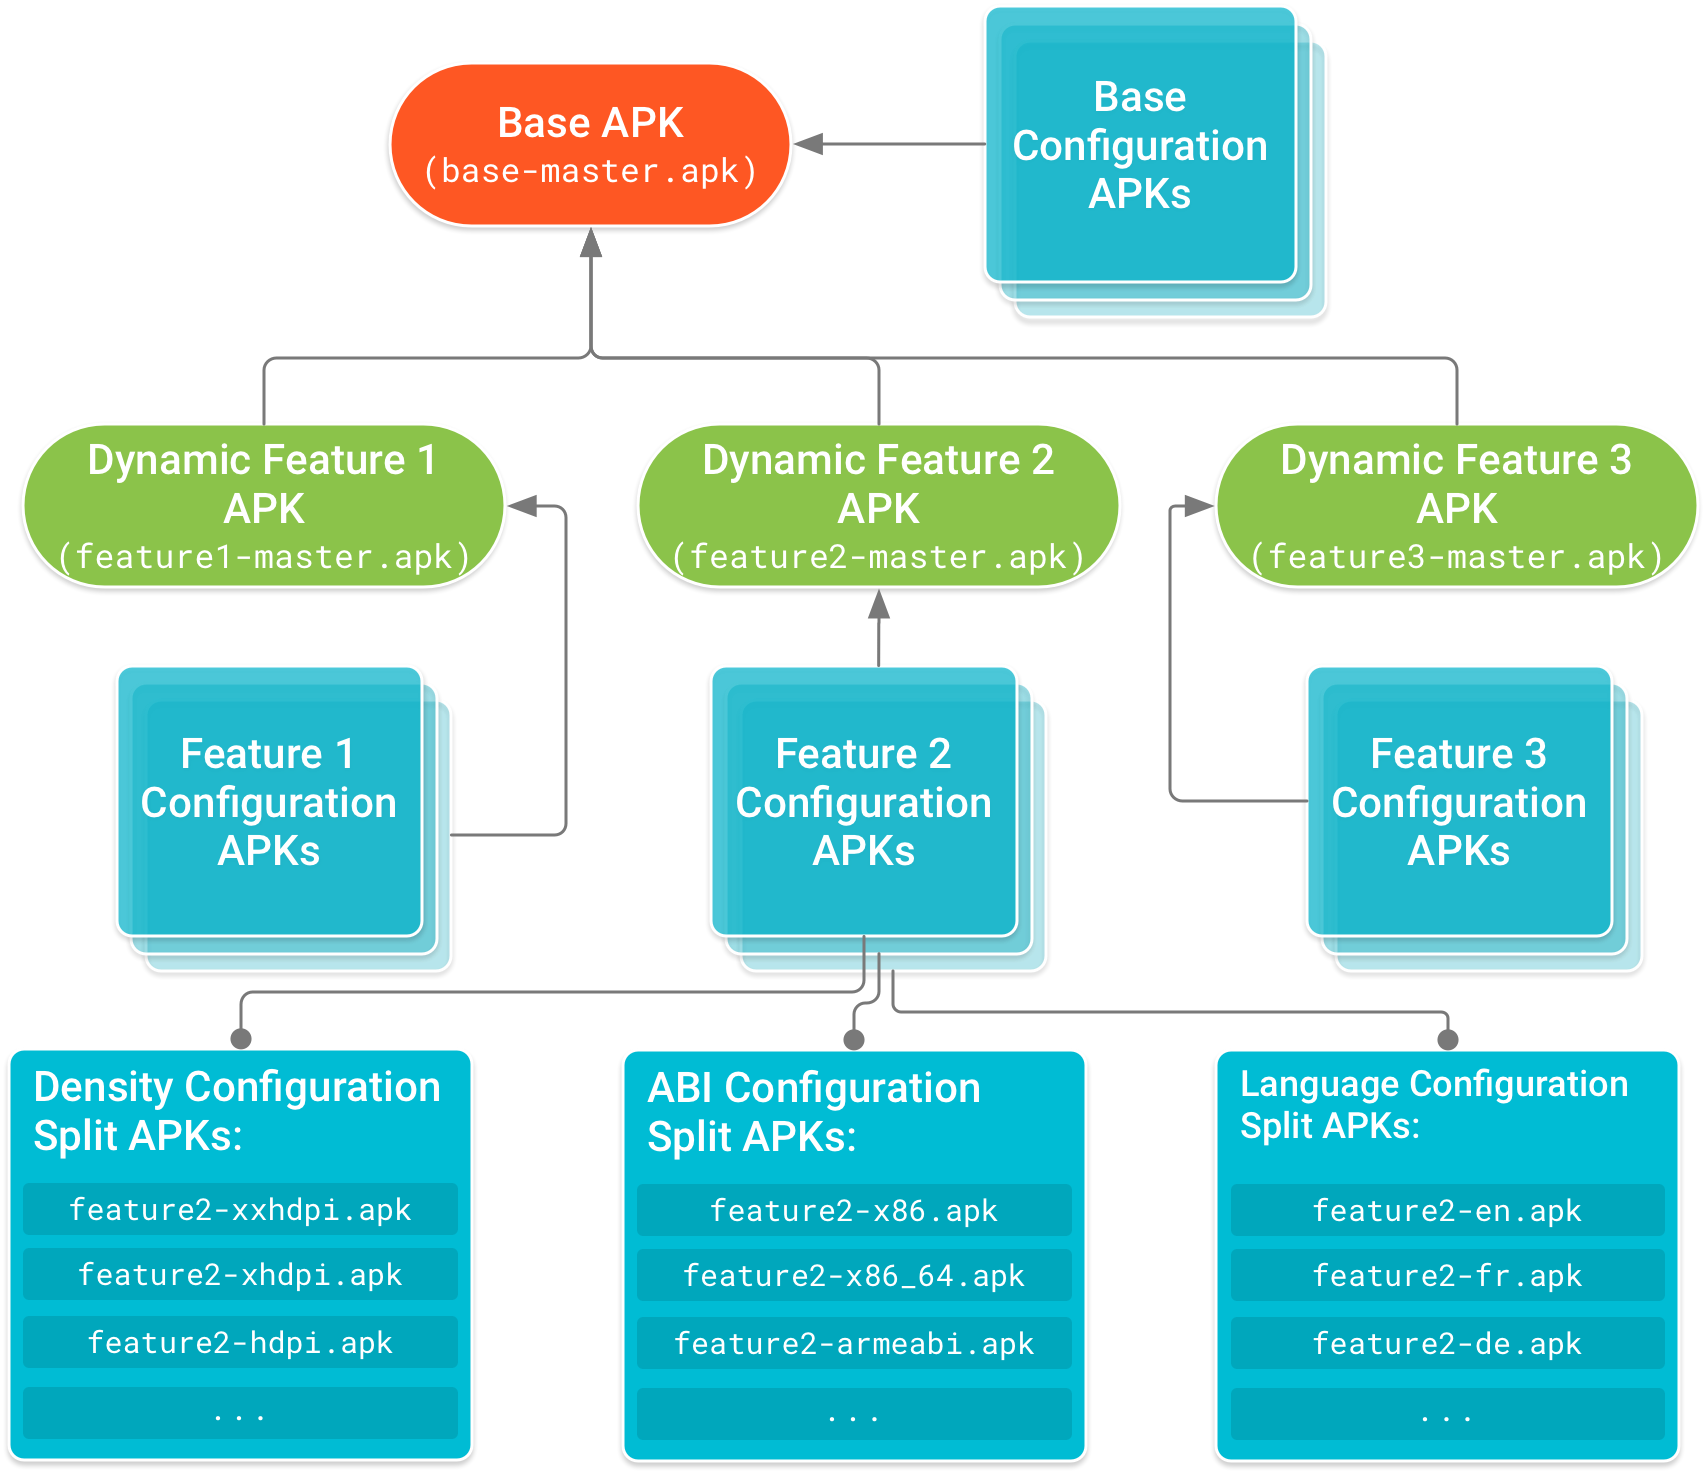 基本 APK 位於樹狀結構的源頭，而功能模組 APK 依附於該 APK。設定 APK (包括基本 APK 及每個功能模組 APK 的裝置設定專屬程式碼和資源)，形成依附元件樹狀結構的分葉節點。